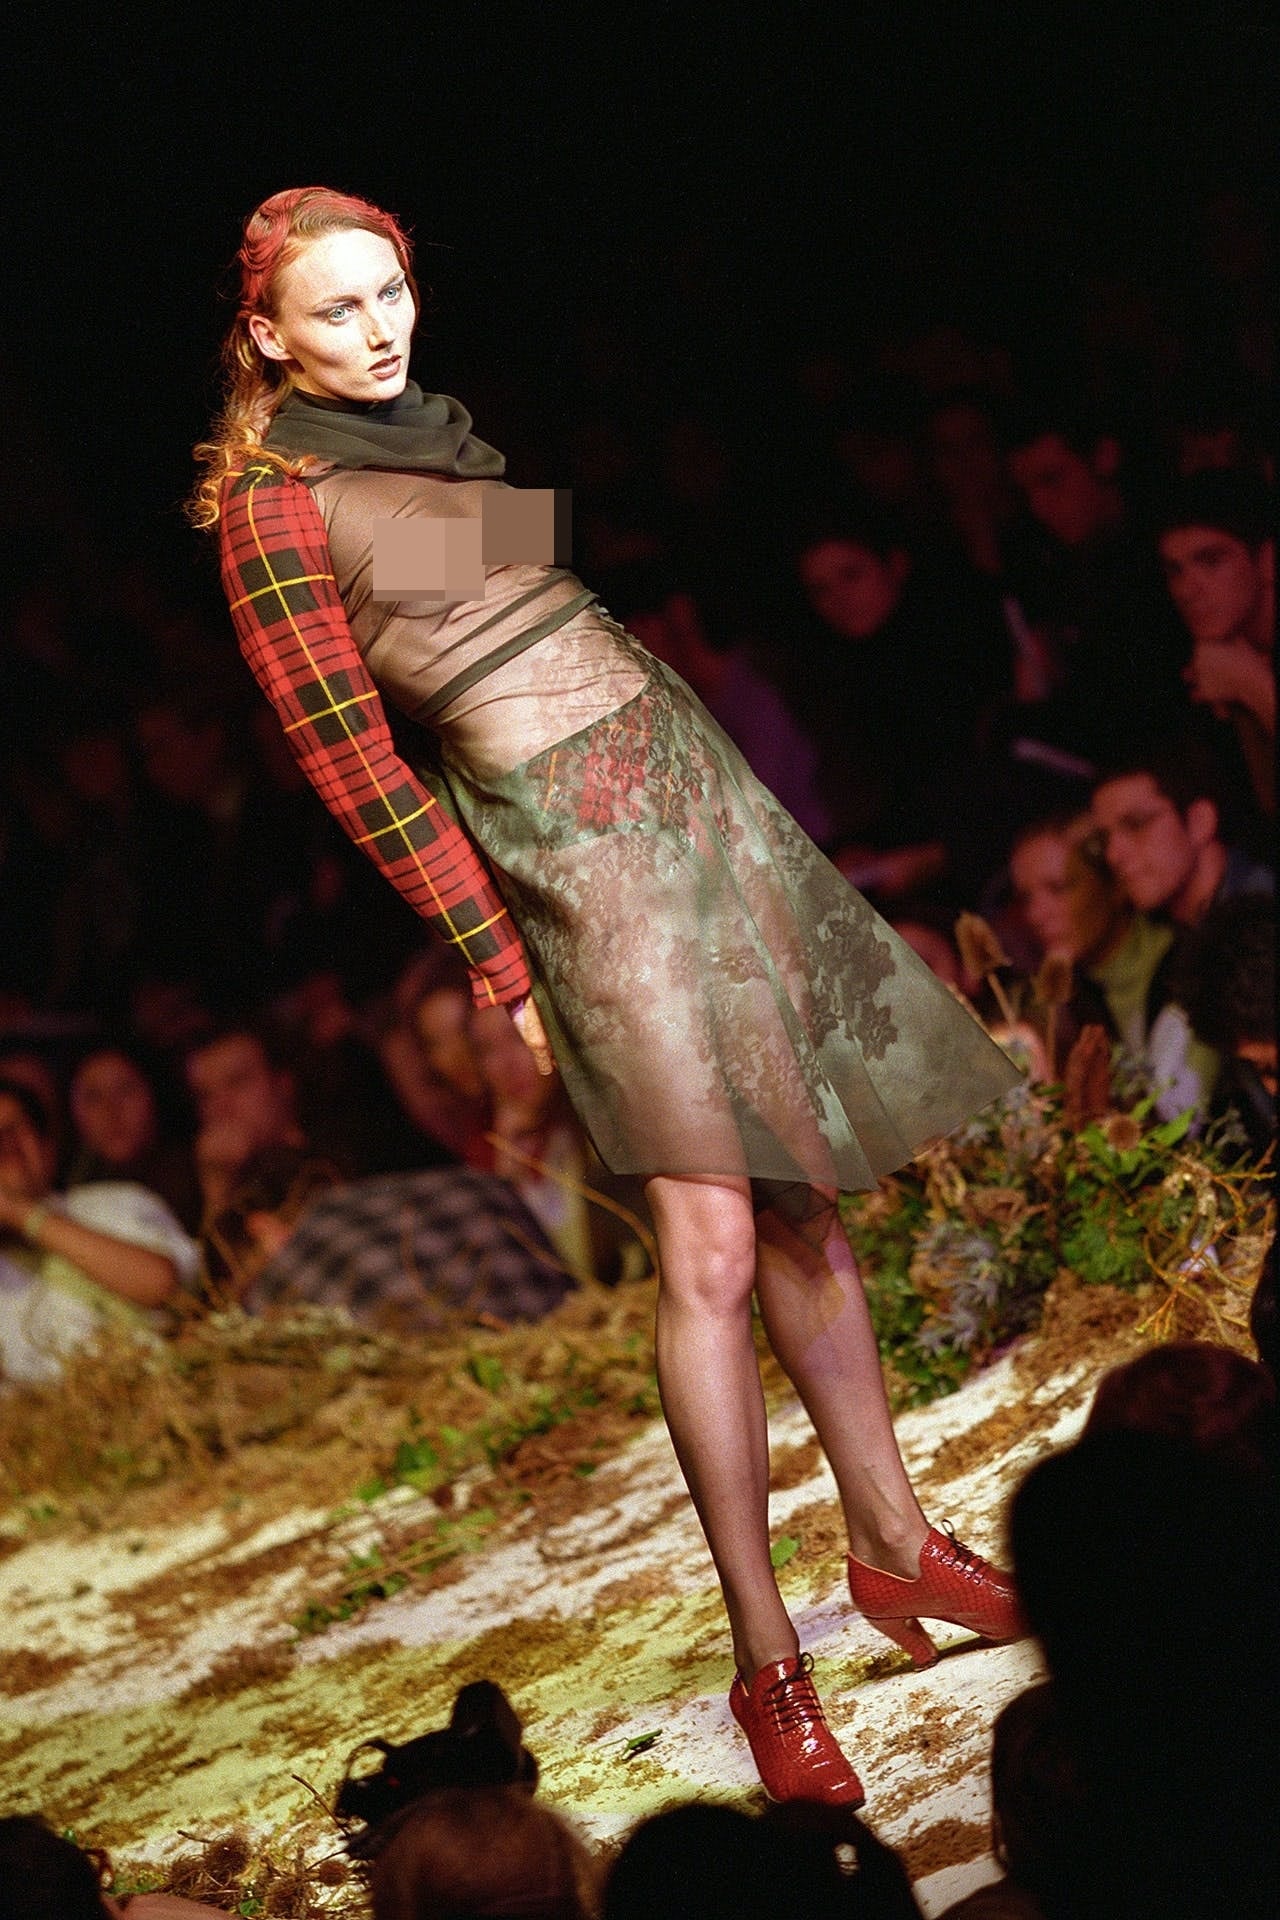 Một trong những show diễn gây tranh cãi trong sự nghiệp của McQueen là show thu/đông năm 1995. Nó gây shock từ tên show đến các thiết kế bán khỏa thân, loang lổ vết thương, trang phục rách rưới, thể hiện sự kiện Anh Quốc đàn áp Scotland